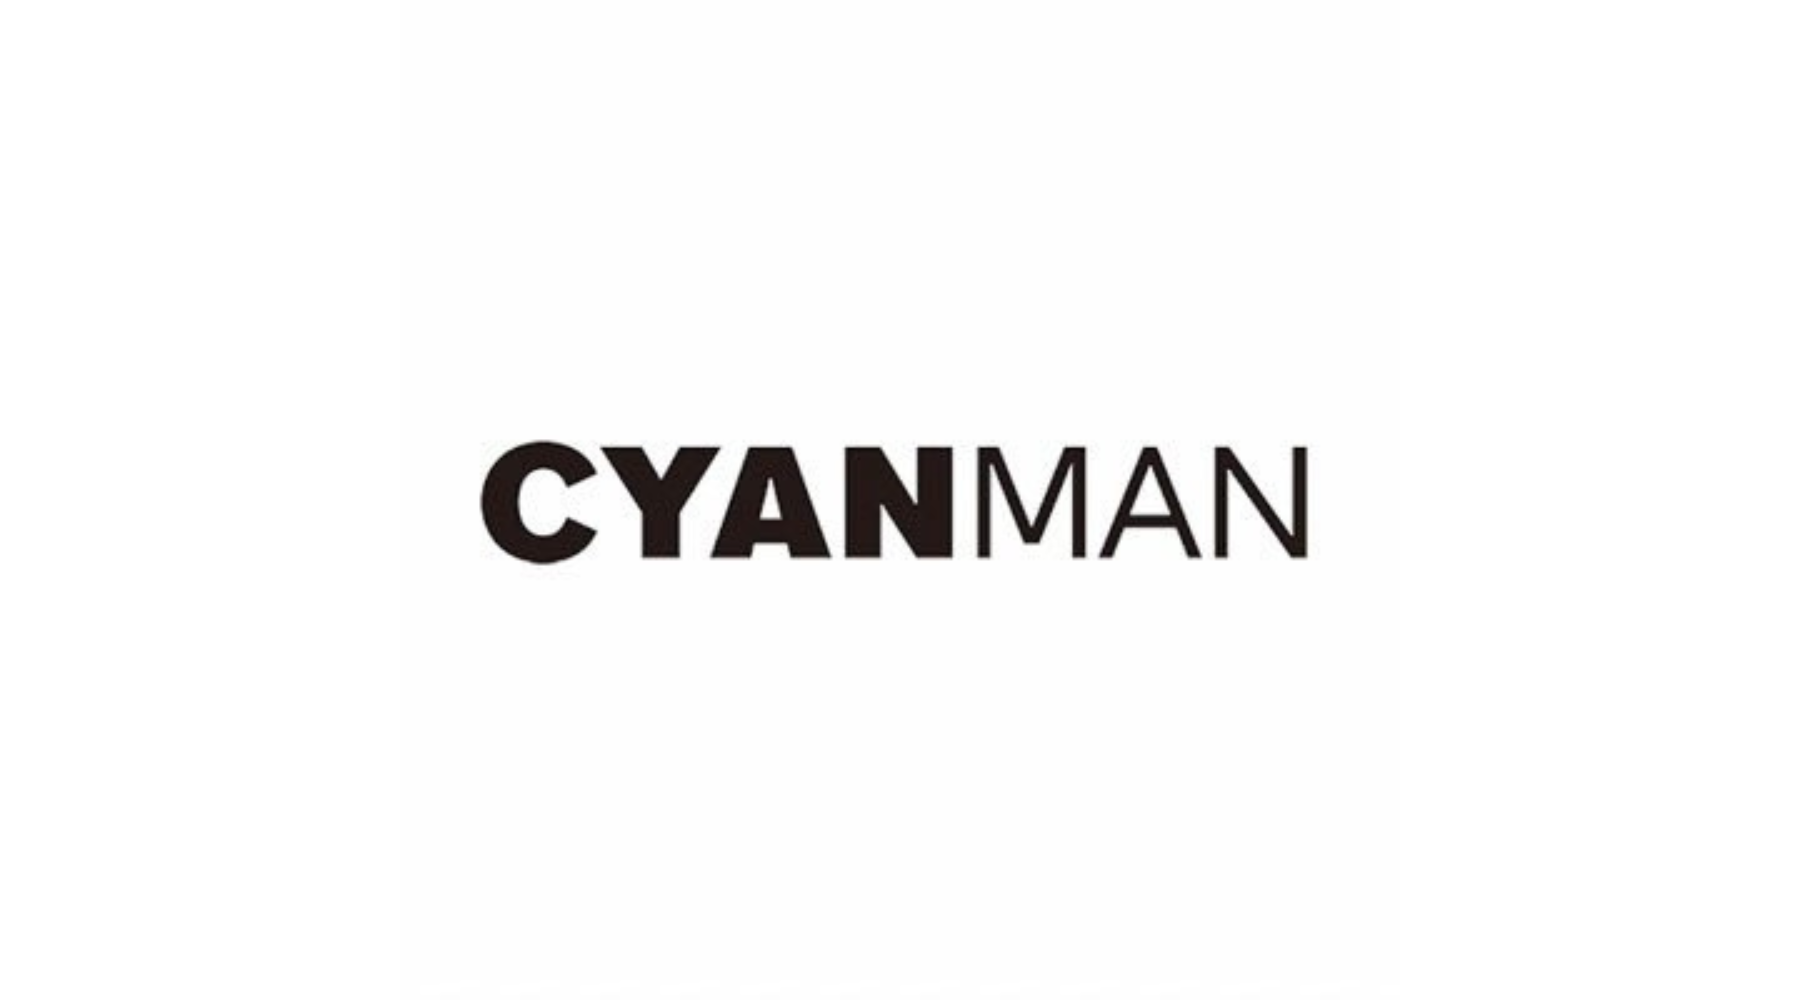 CYANMAN